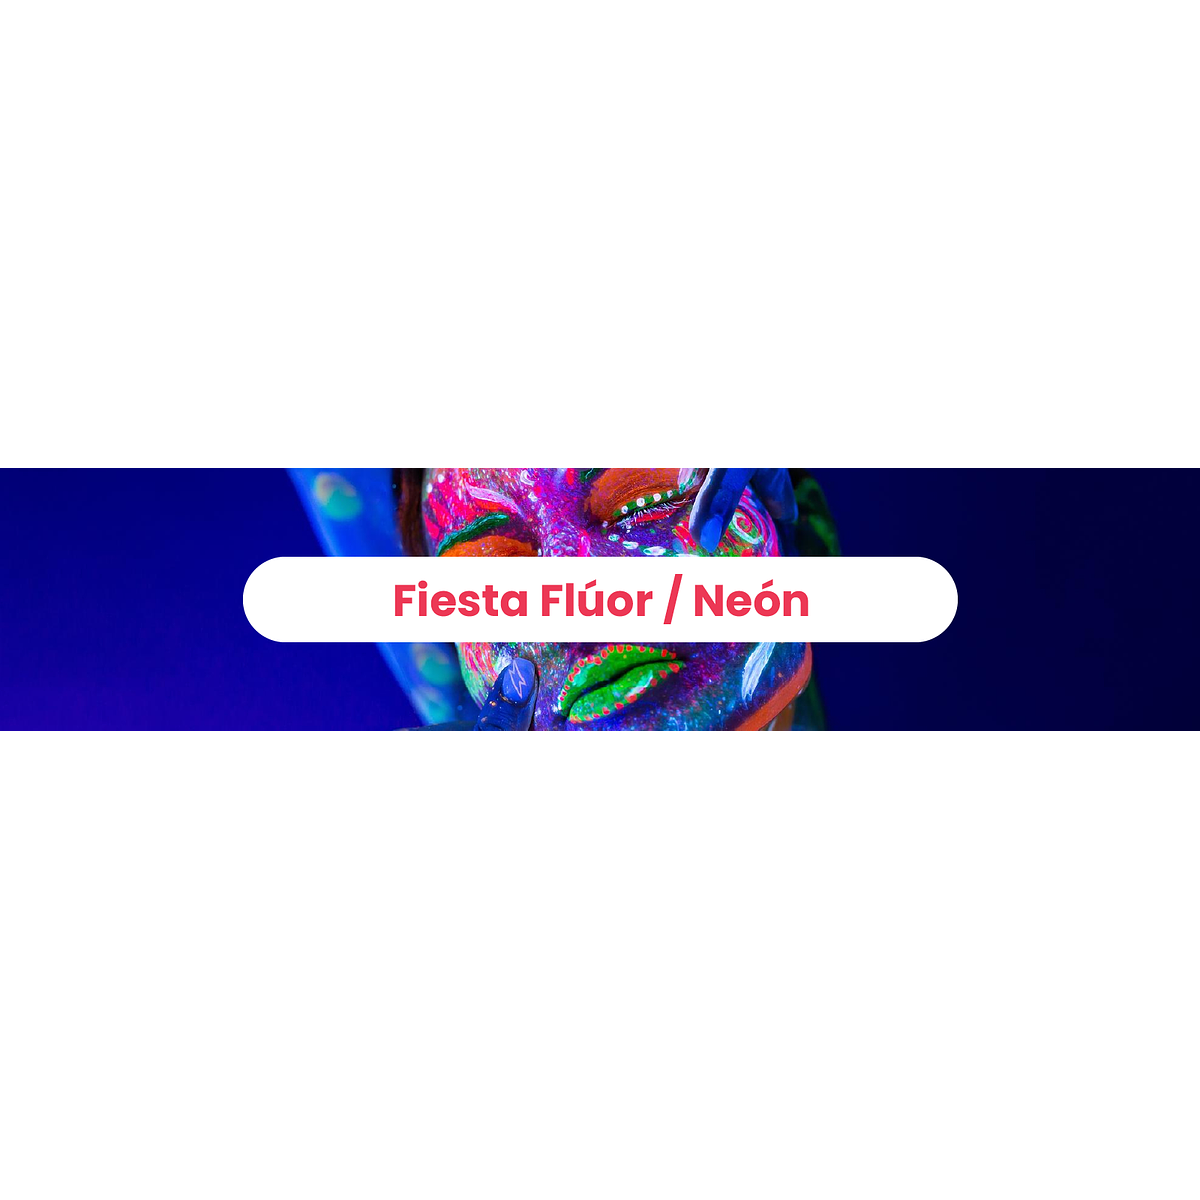 Fiesta Flúor